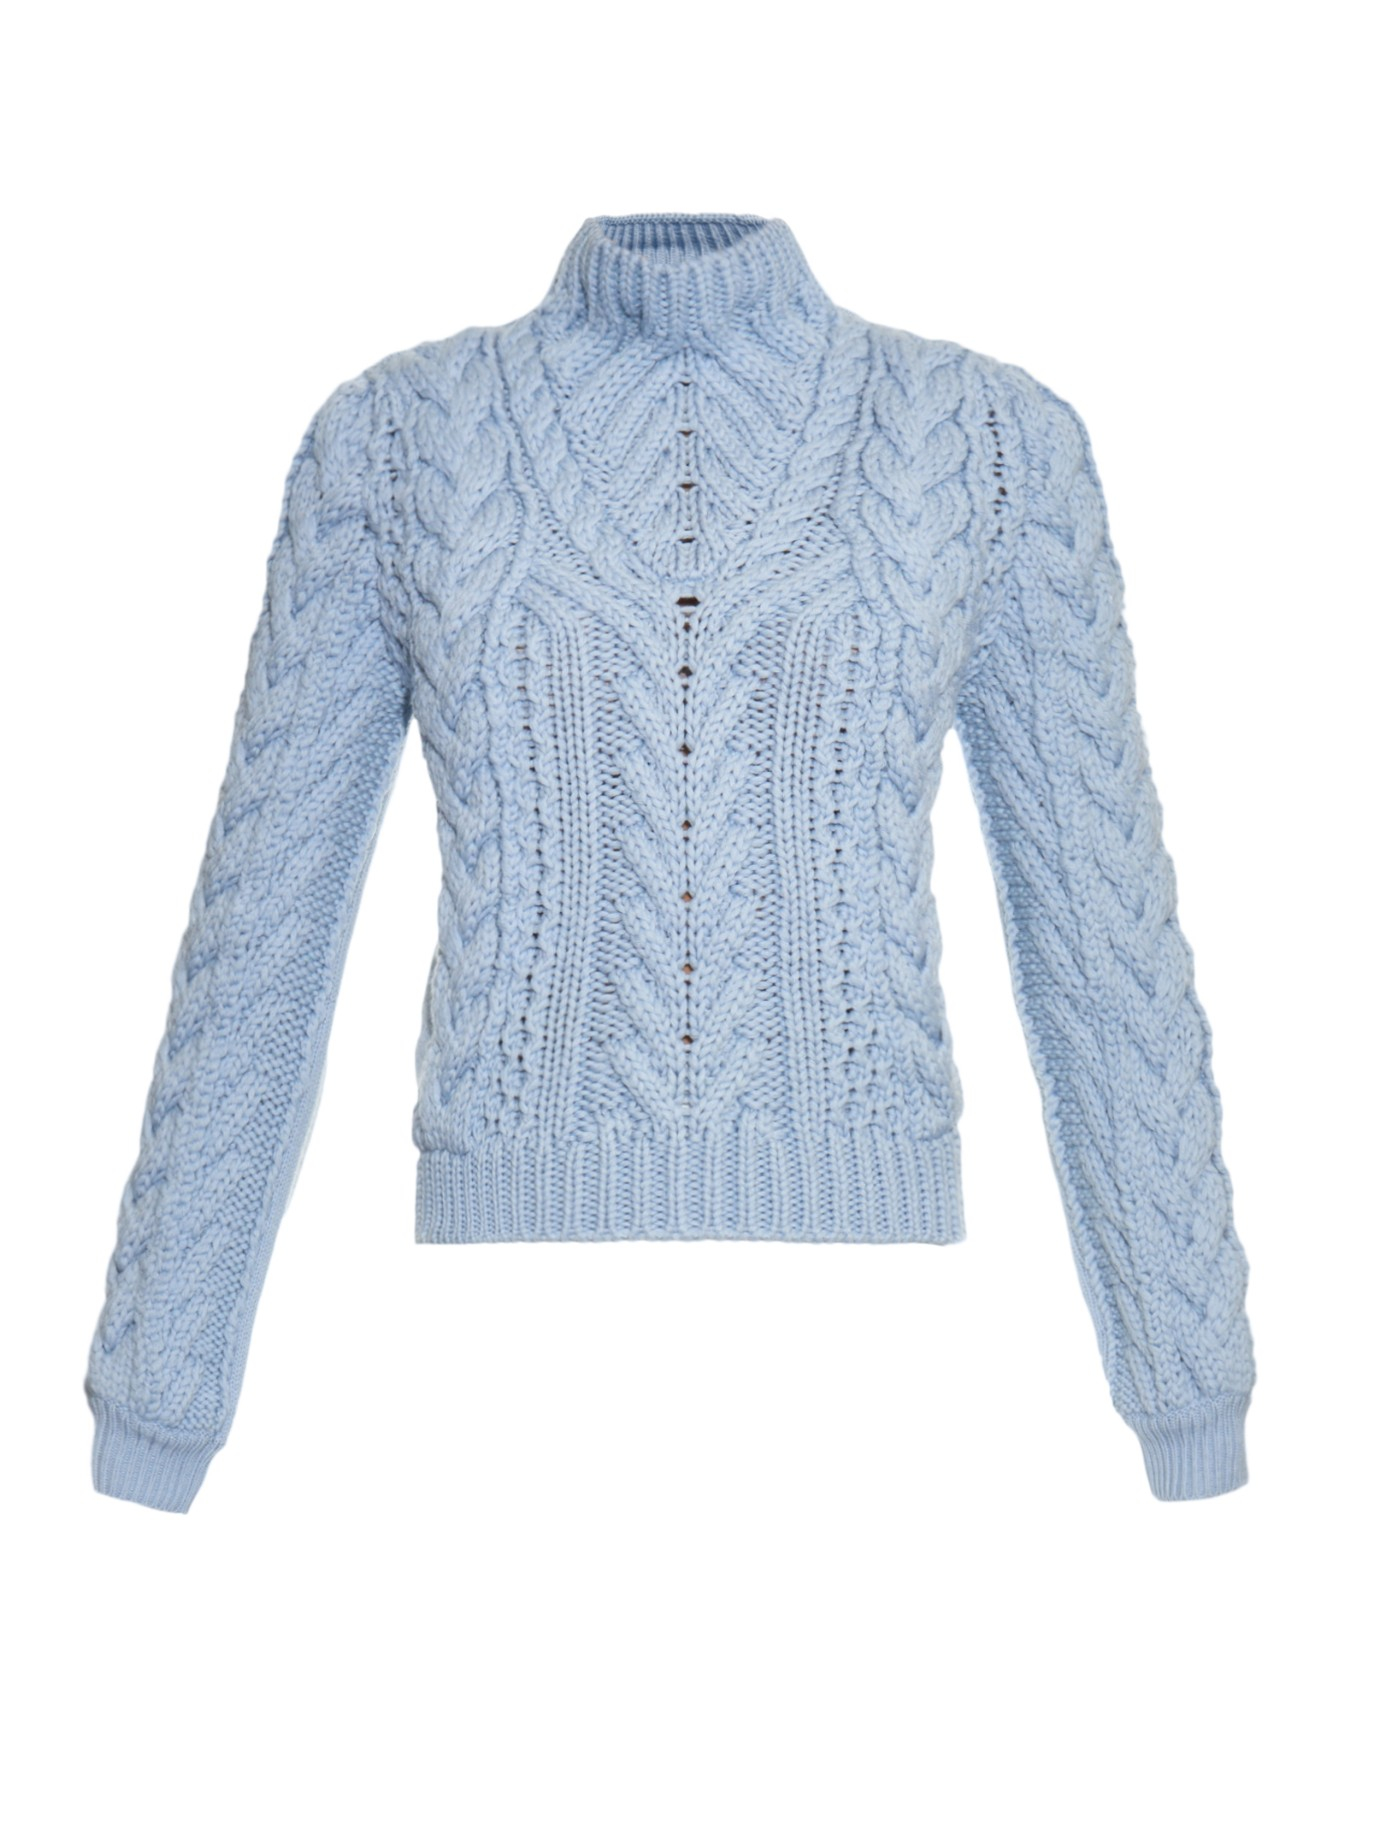 Altuzarra Harper Chunky-knit Wool Sweater in Blue | Lyst